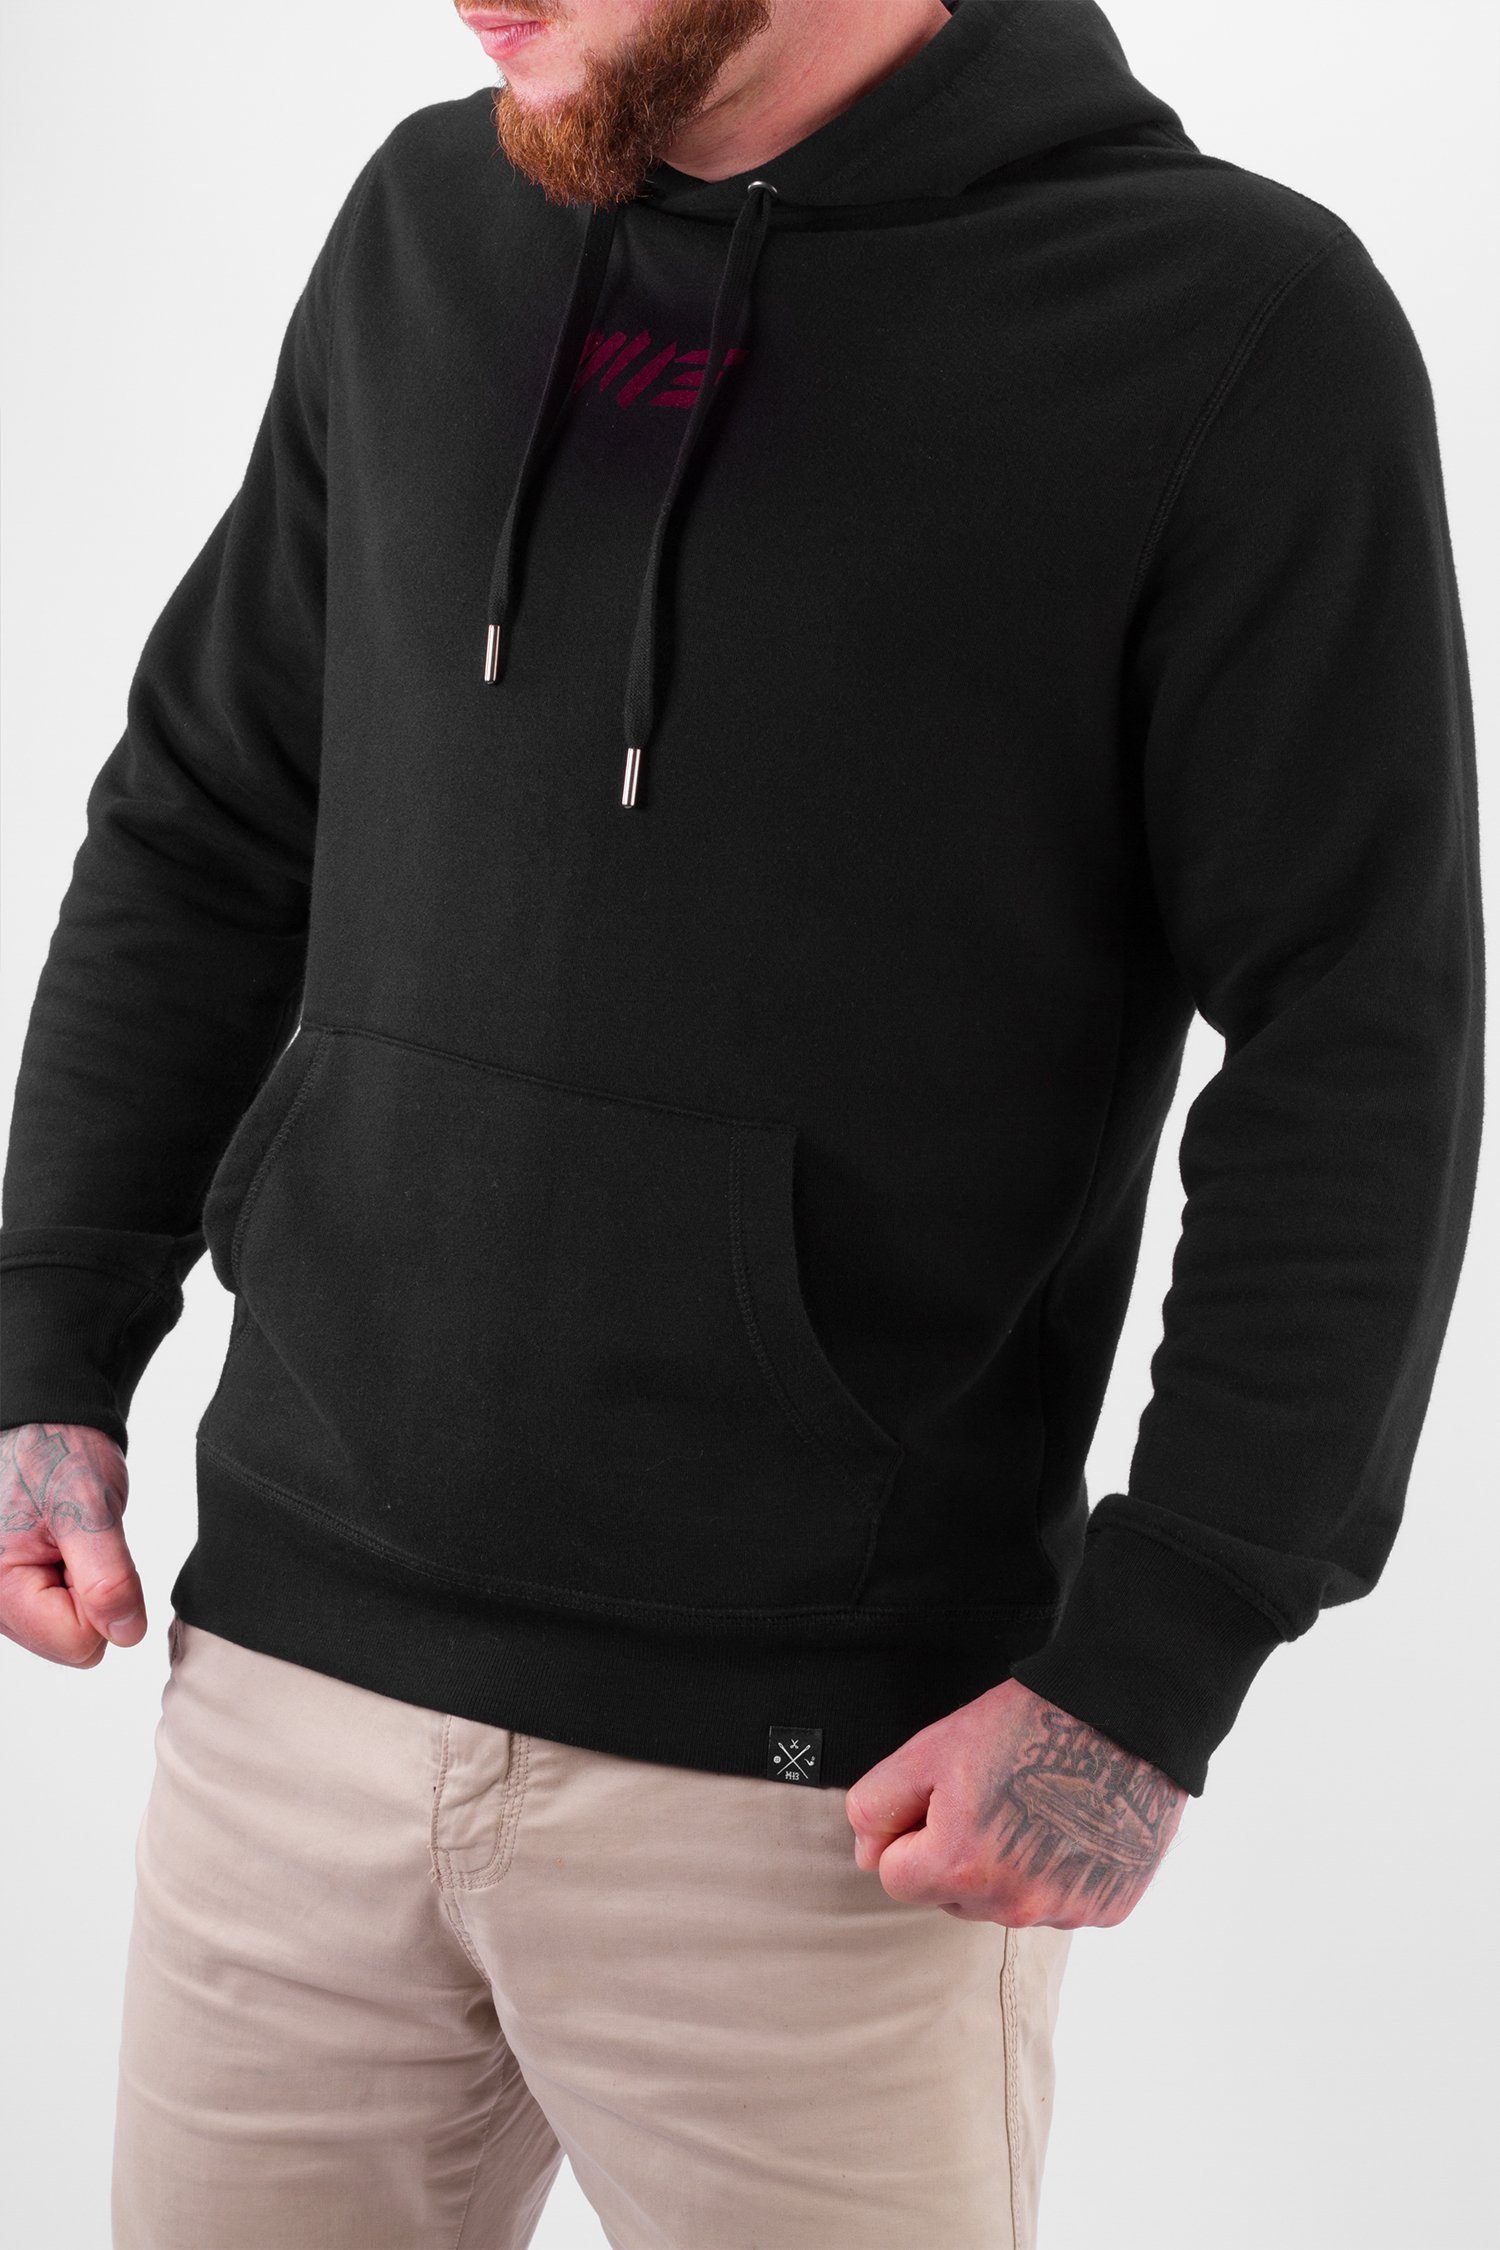 Sweater Bully - Manufaktur13 Hoodie Metallkordeln Kapuzenpullover Black Hooded mit M13